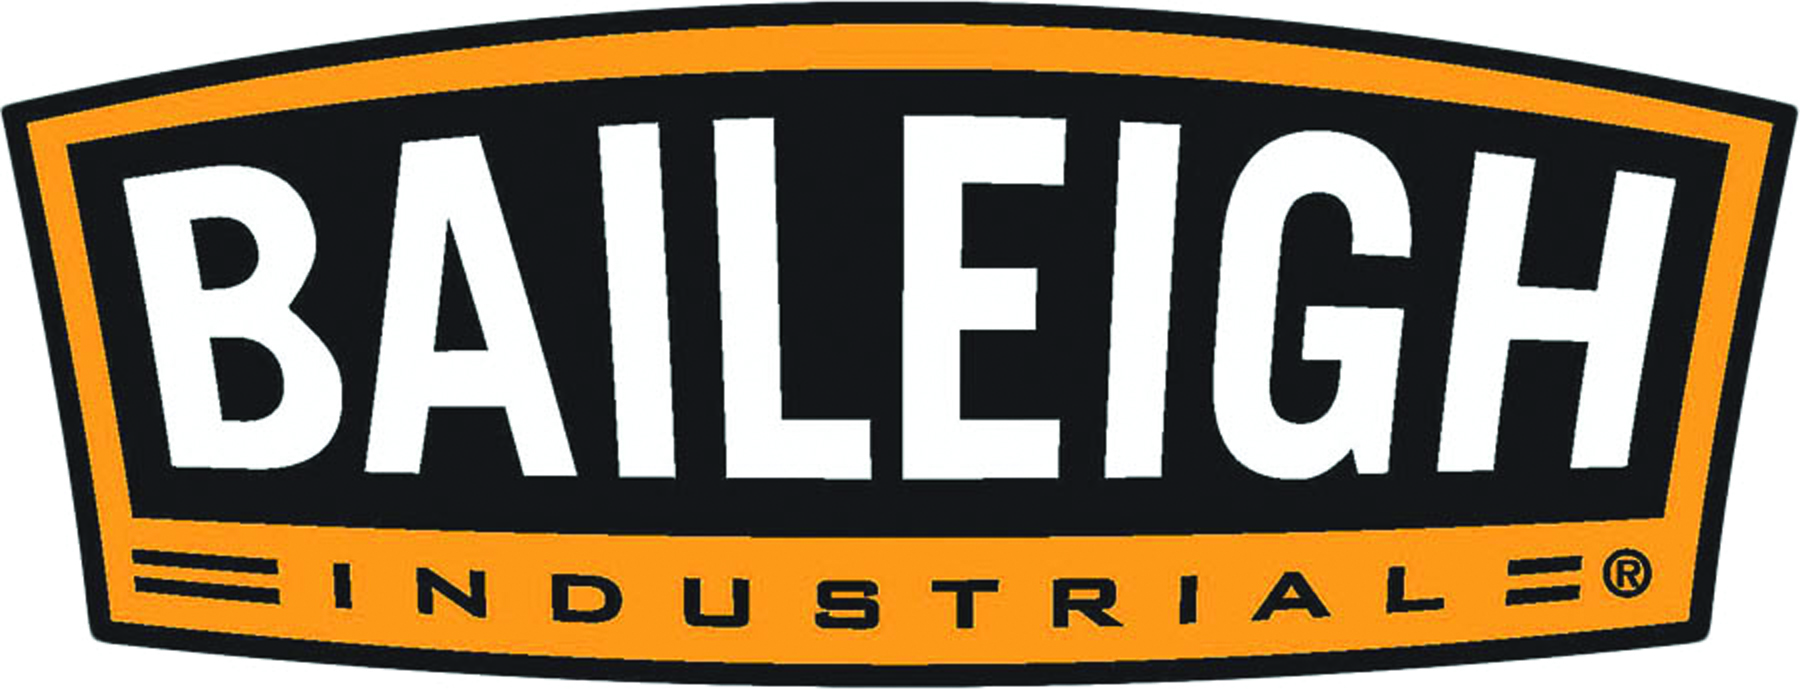 Baileigh logo